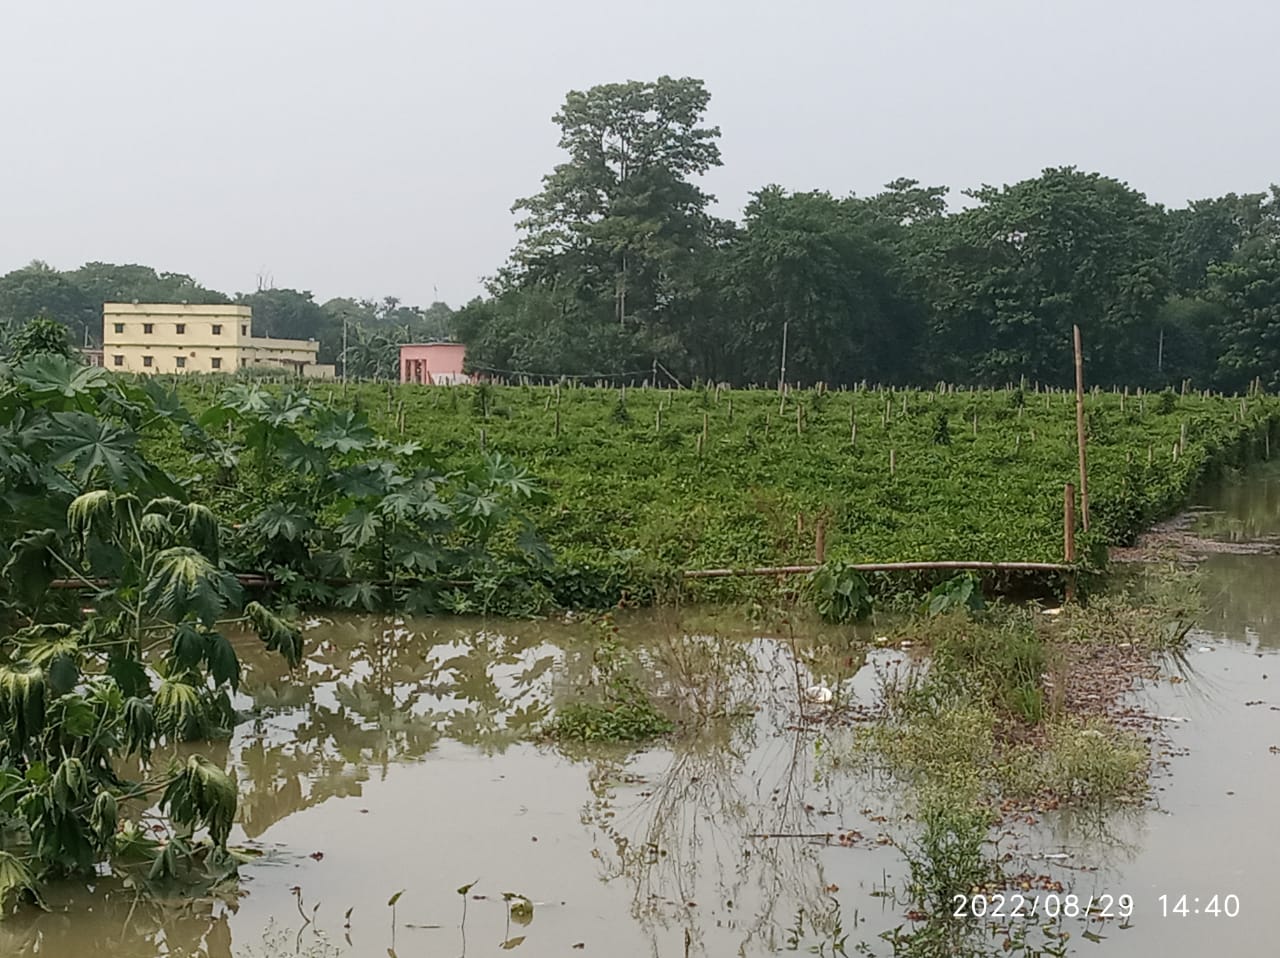 गंगा नदी के जलस्तर में वृद्धि,सोनपुर प्रखंड के सबलपुर के चारों पंचायत बाढ़ से प्रभावित –सोनपुर